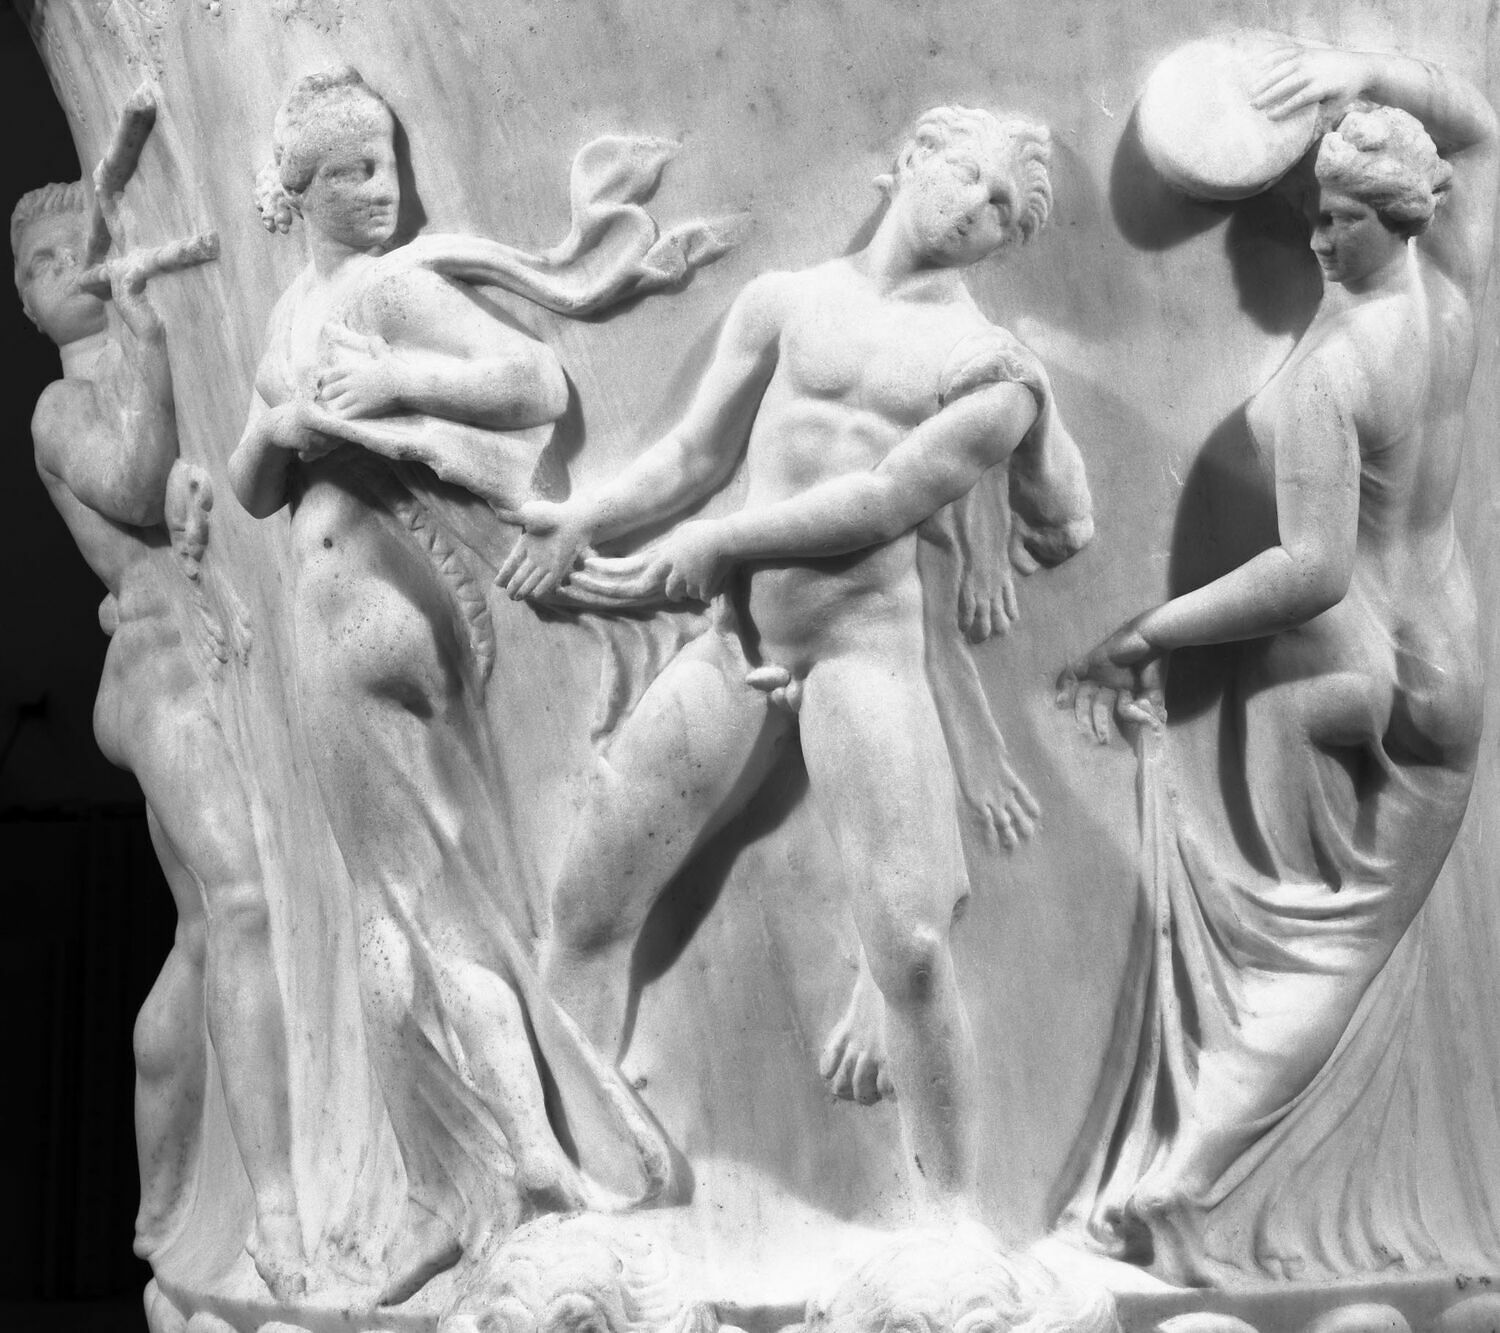 Schwarz-Weiß-Fotografie einer Borghese-Vase aus der Sammlung des Louvre.  Detailausschnitt.